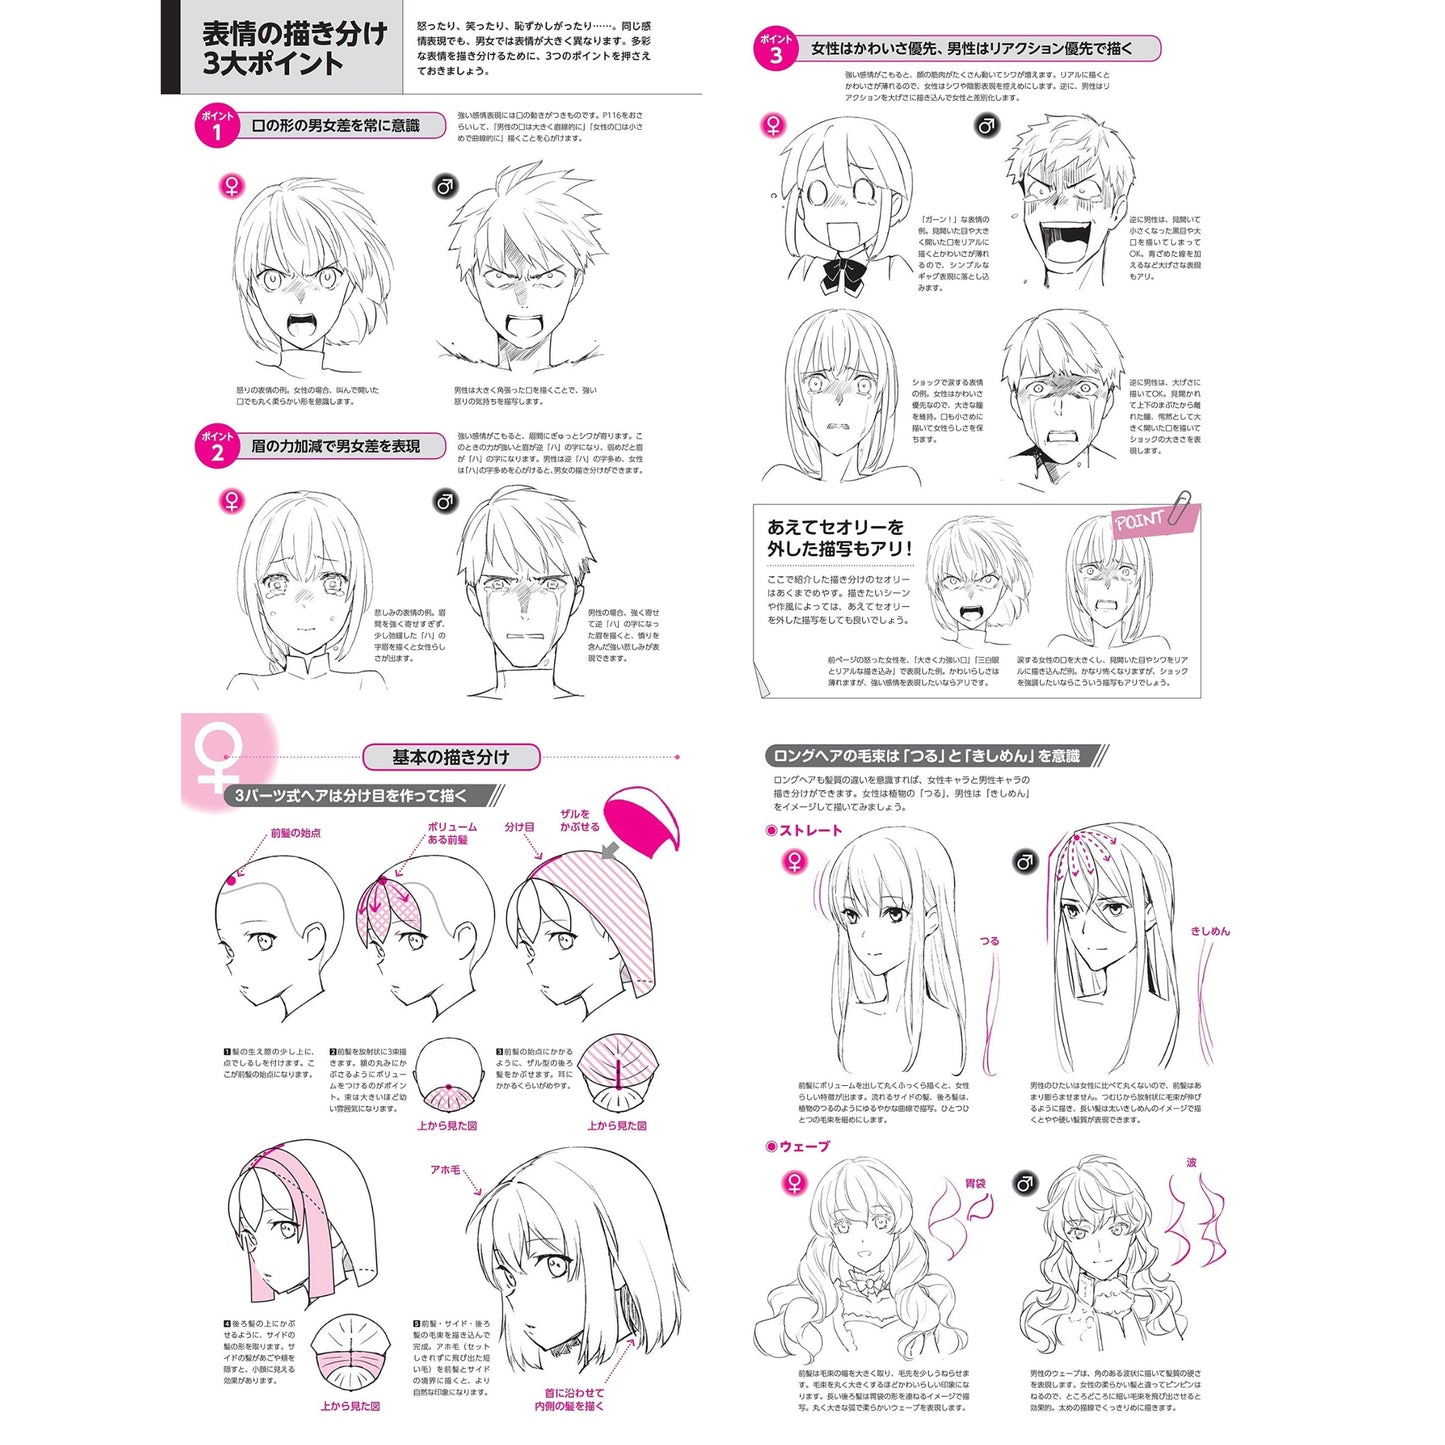 How to draw - jap. Zeichenbuch - männliche und weibliche Gesichter